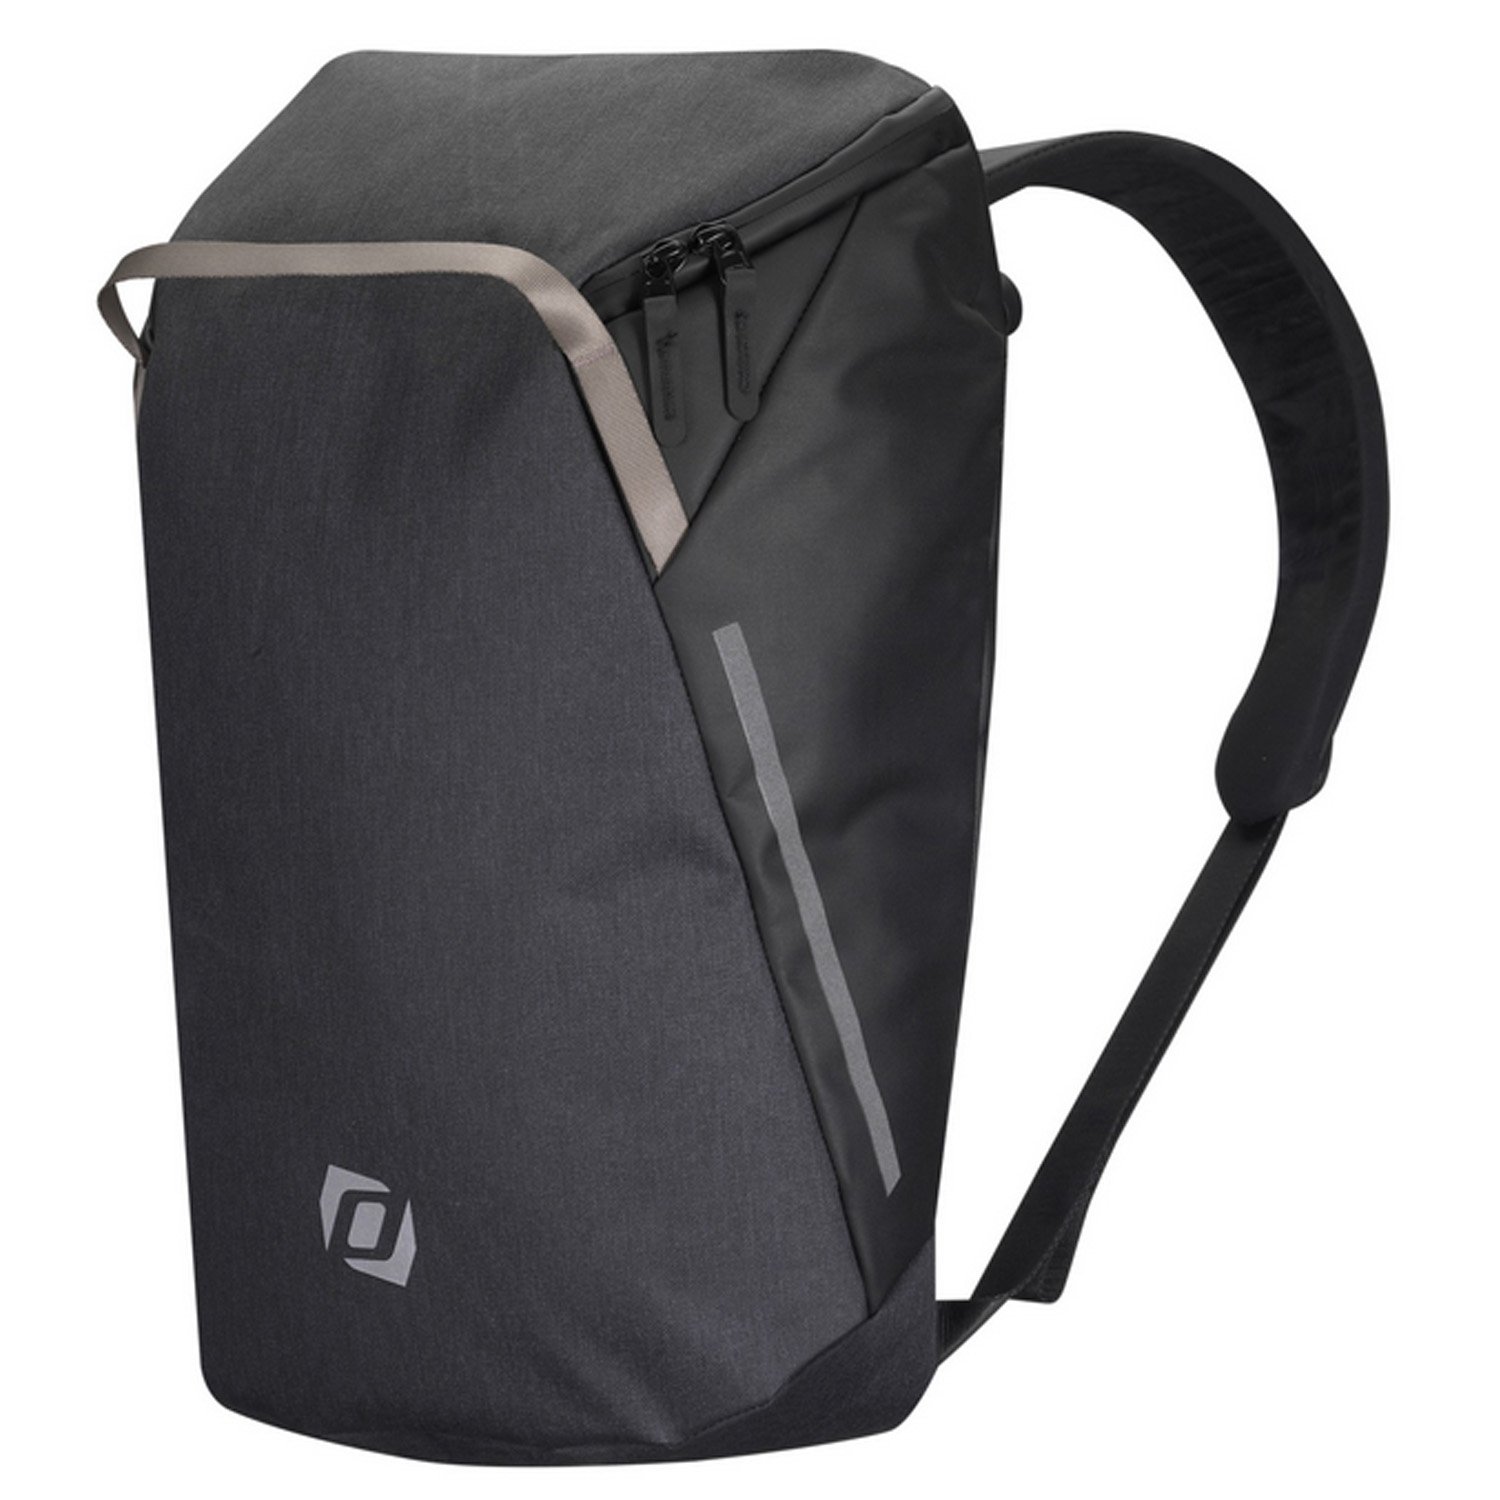 Велосумка Syncros Backpack, для багажника, черный, ES281116-0001 комплект опор багажника atlant тип с 8709